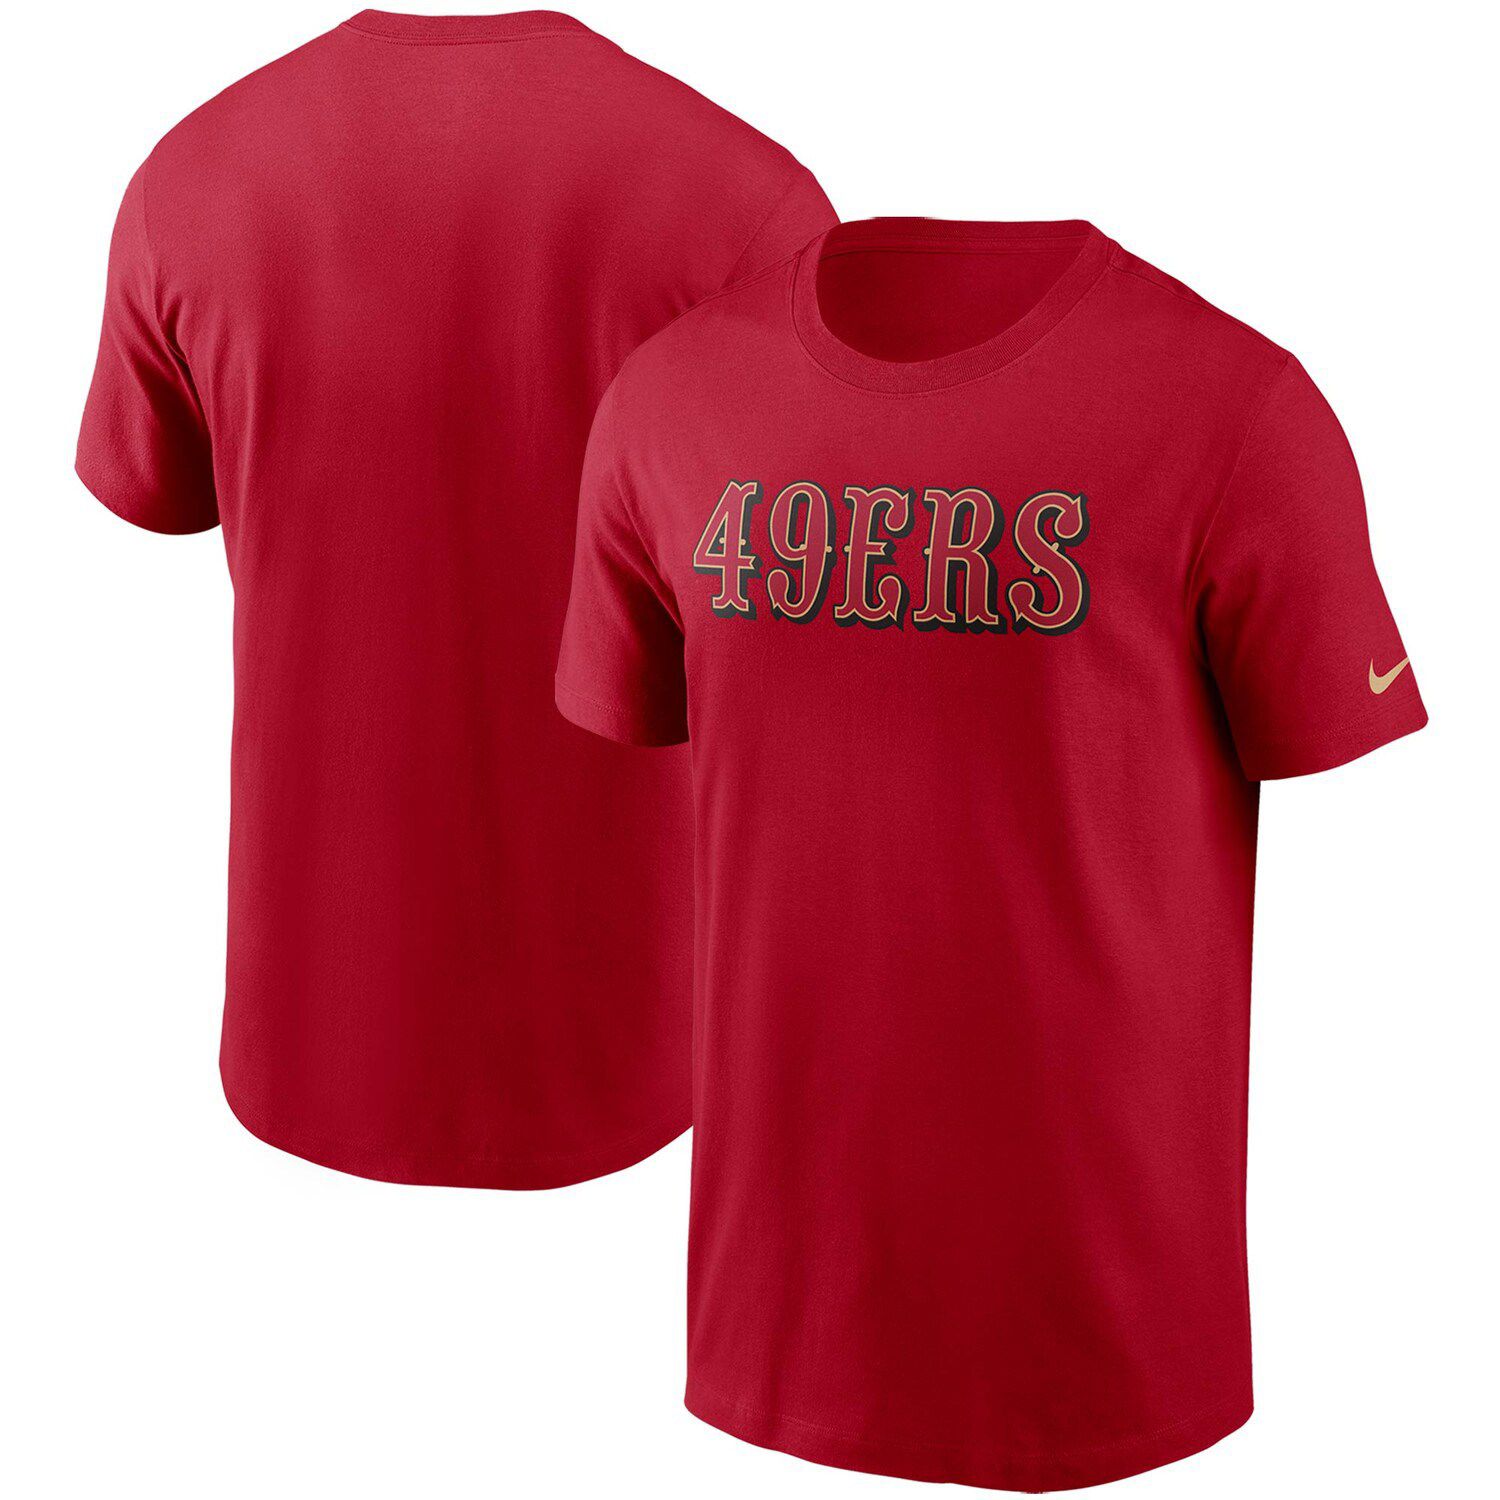 49ers nike shirt